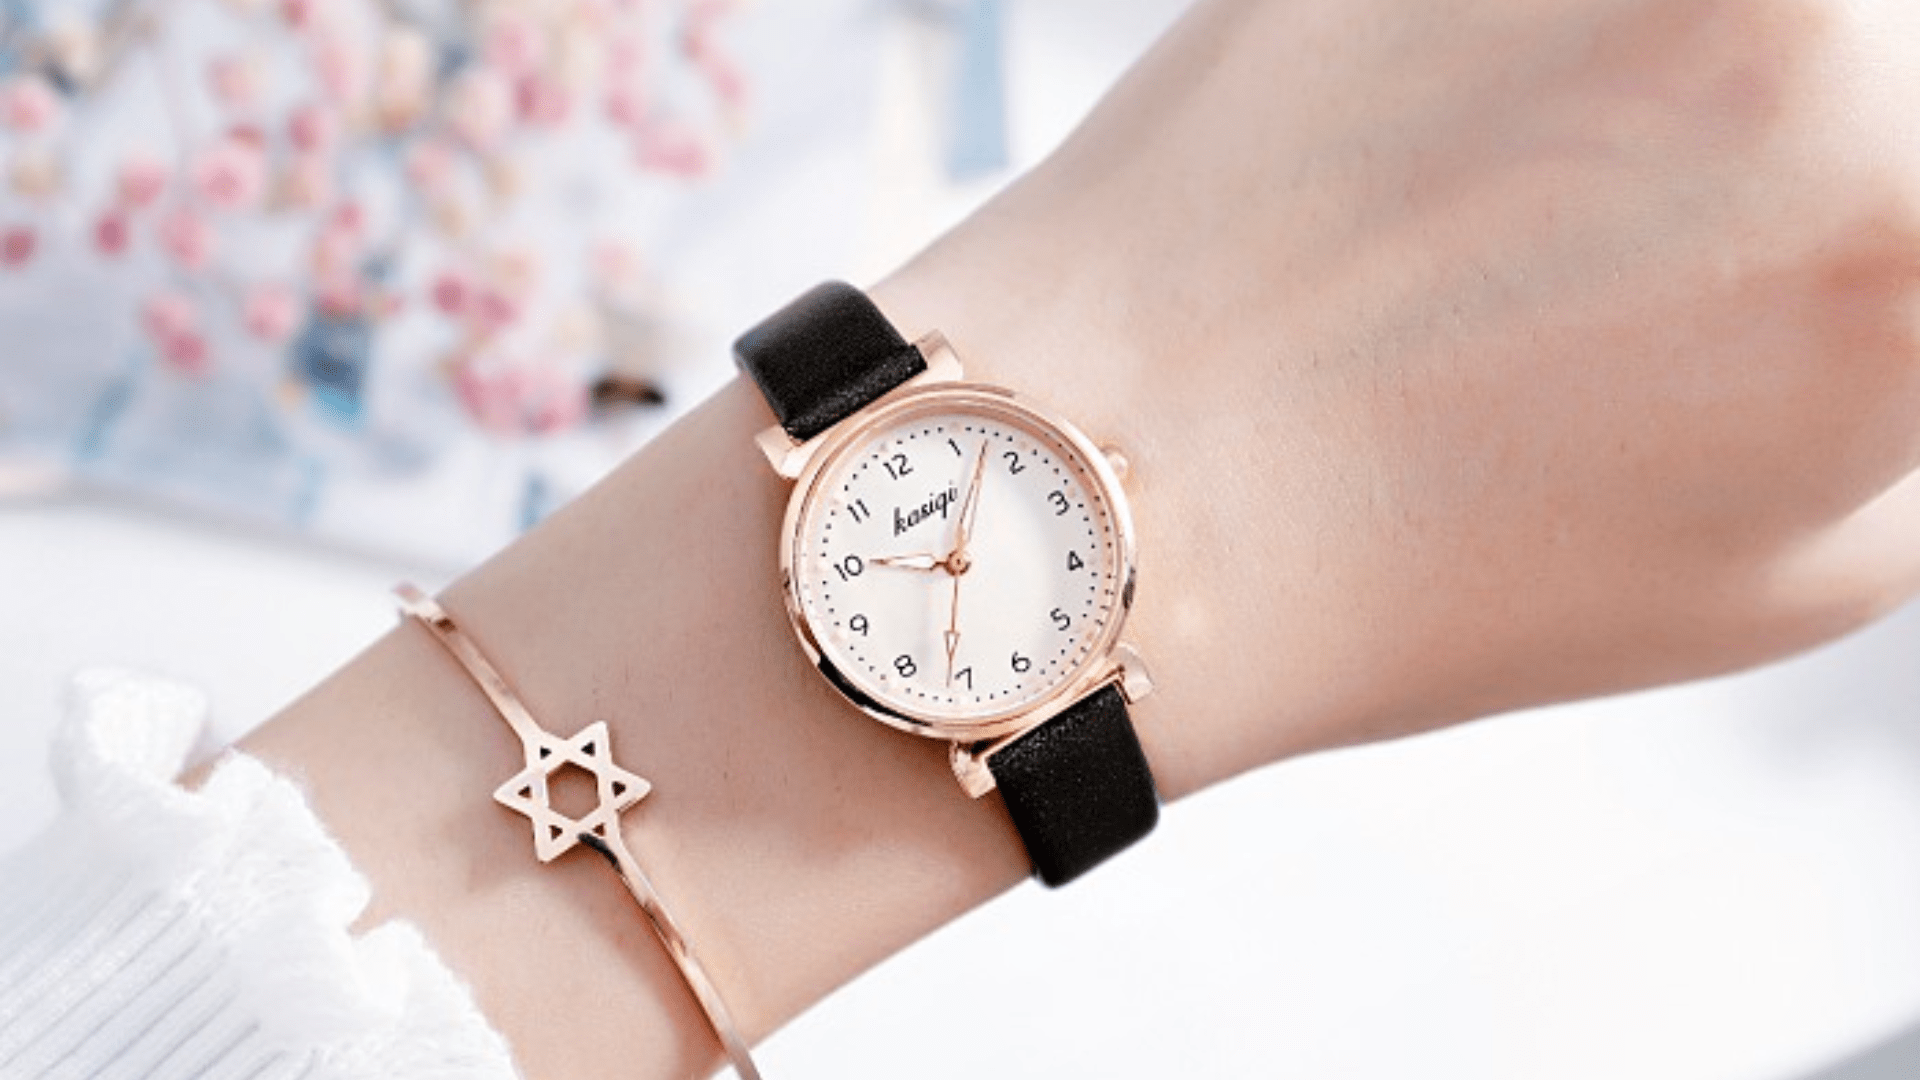 Topten - Shop đồng hồ Đà Nẵng đa dạng